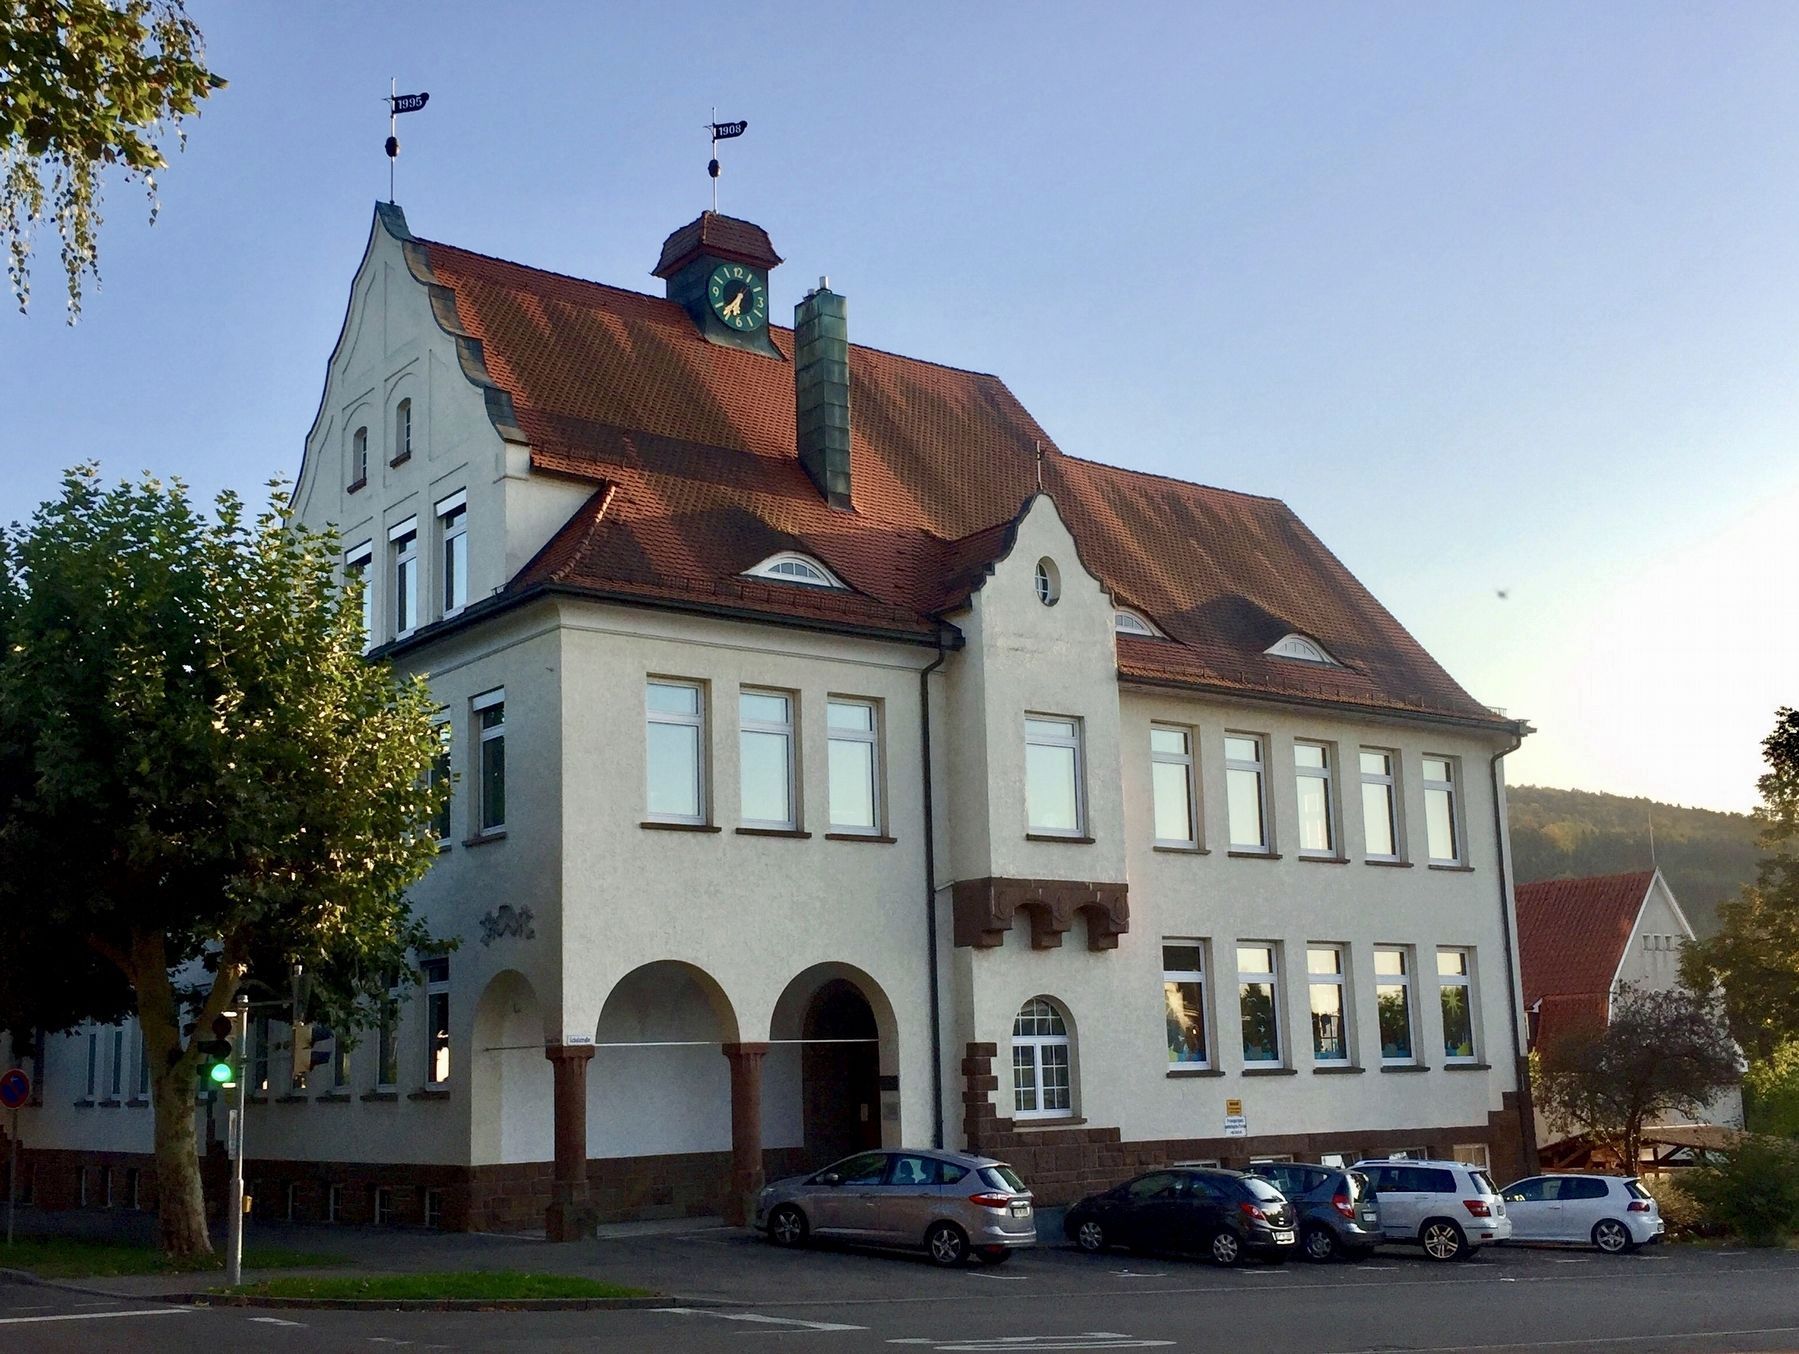 The Third School in Plderhausen / Das 3. Schulhaus in Plderhausen Marker image. Click for full size.